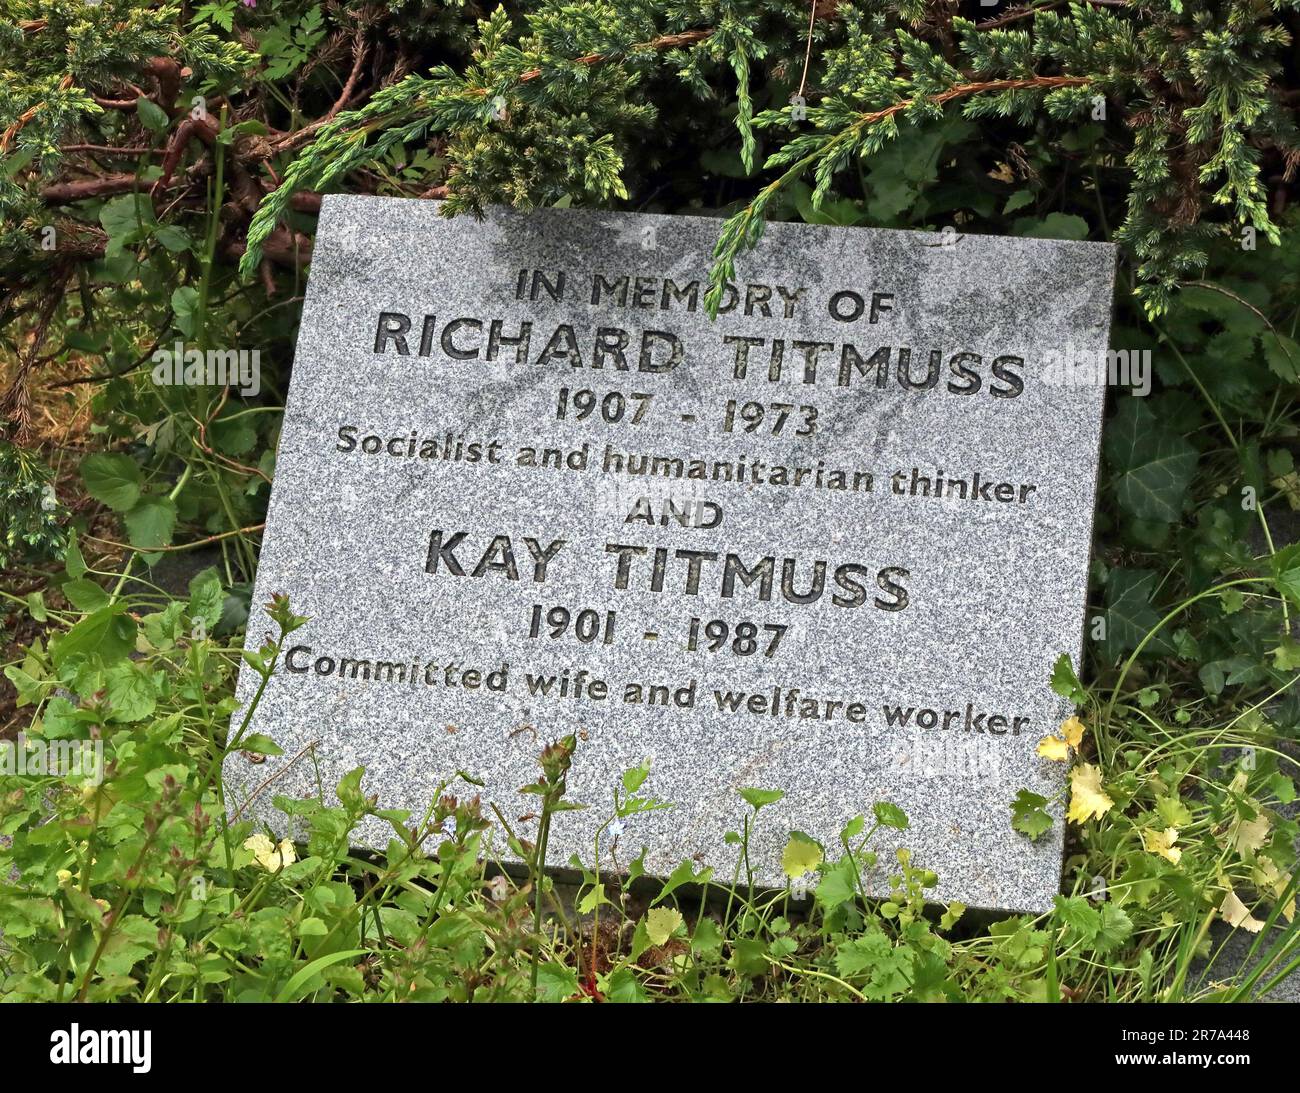 Grab von Richard Titmuss, Kay Titmuss, 1907-1973 sozialistischer und humanitärer Denker, begraben in Highgate Cemetery, London, Swain's Lane, N6 6PJ Stockfoto